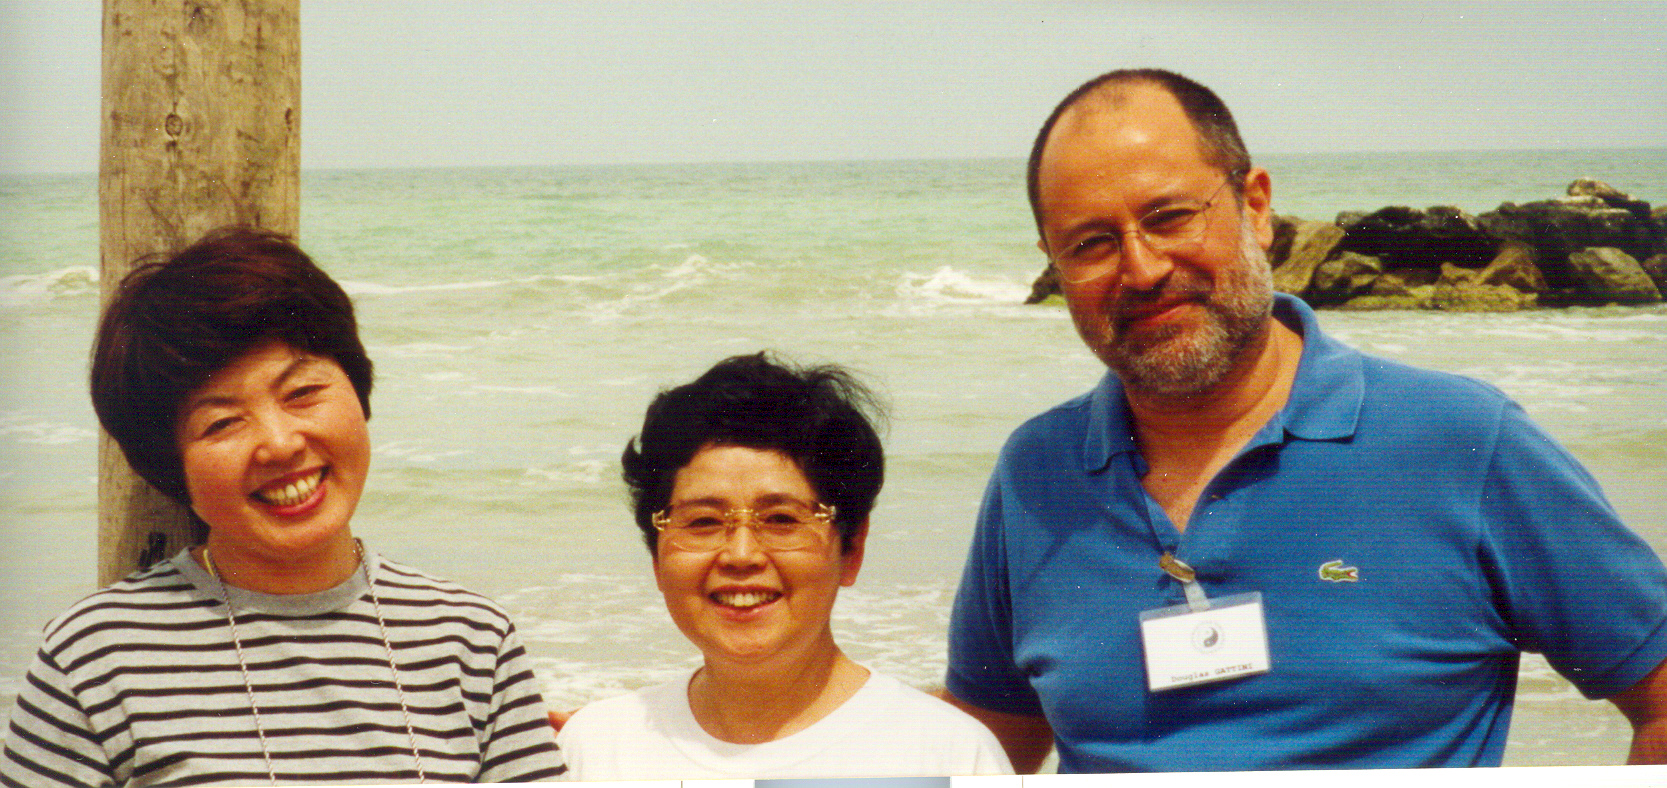 Shambàla Shiatsu maestri internazionali Kayoto Takahama ed Eiko Yoshino